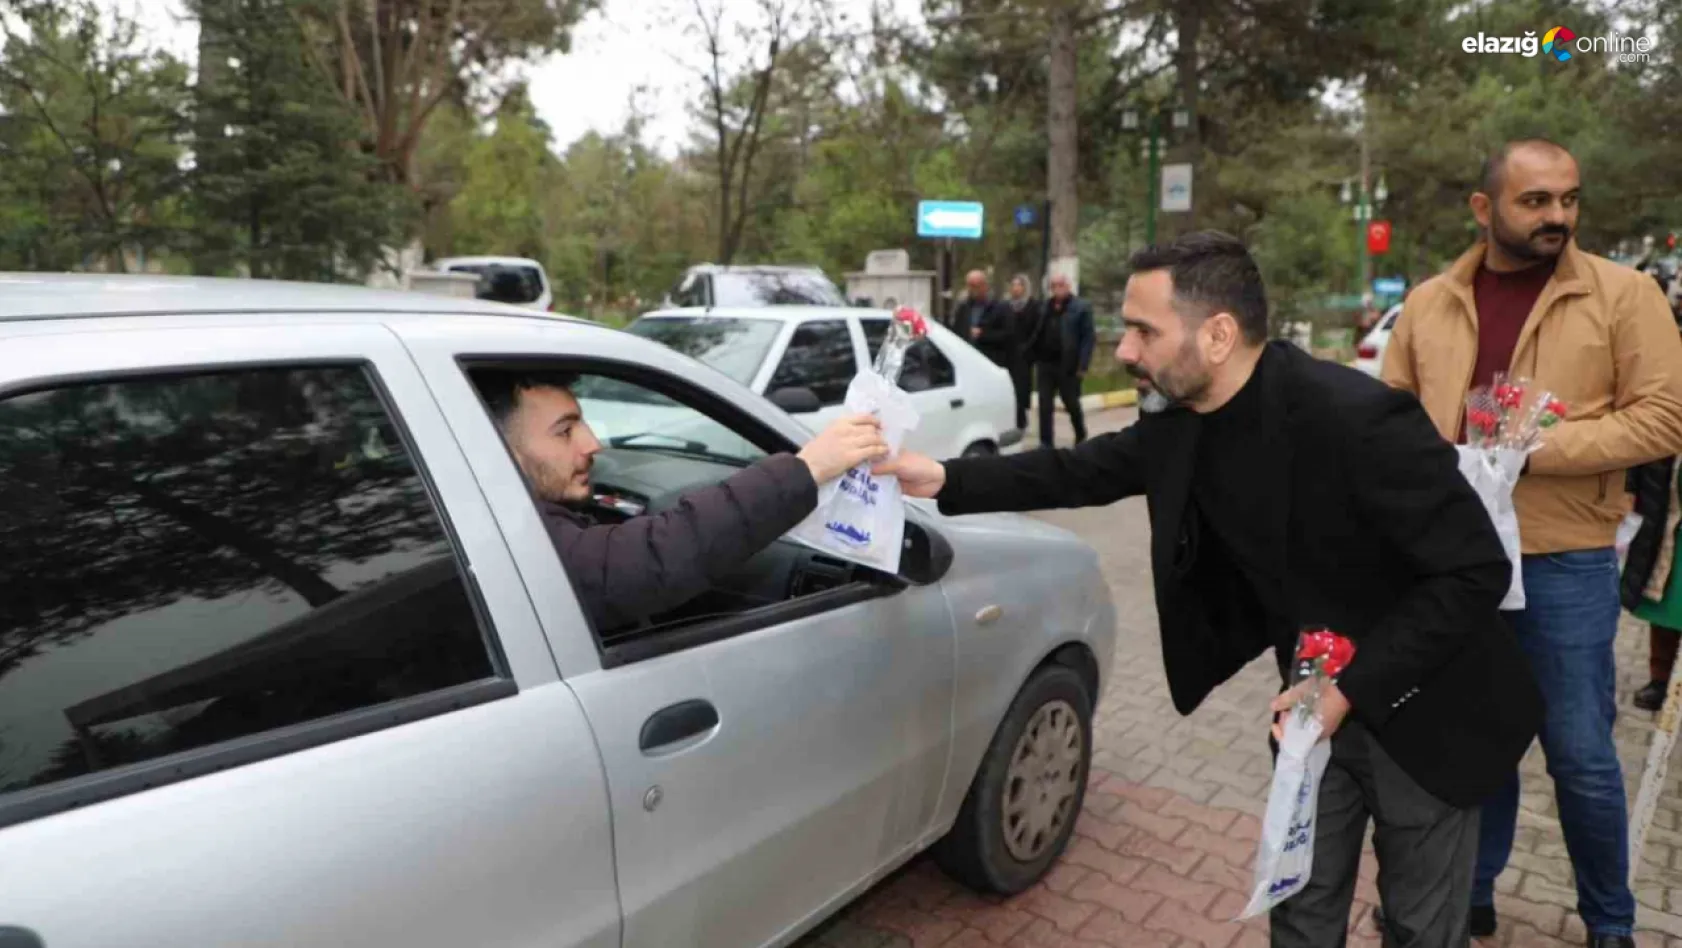 Elazığ Belediyesi vatandaşları yalnız bırakmadı!